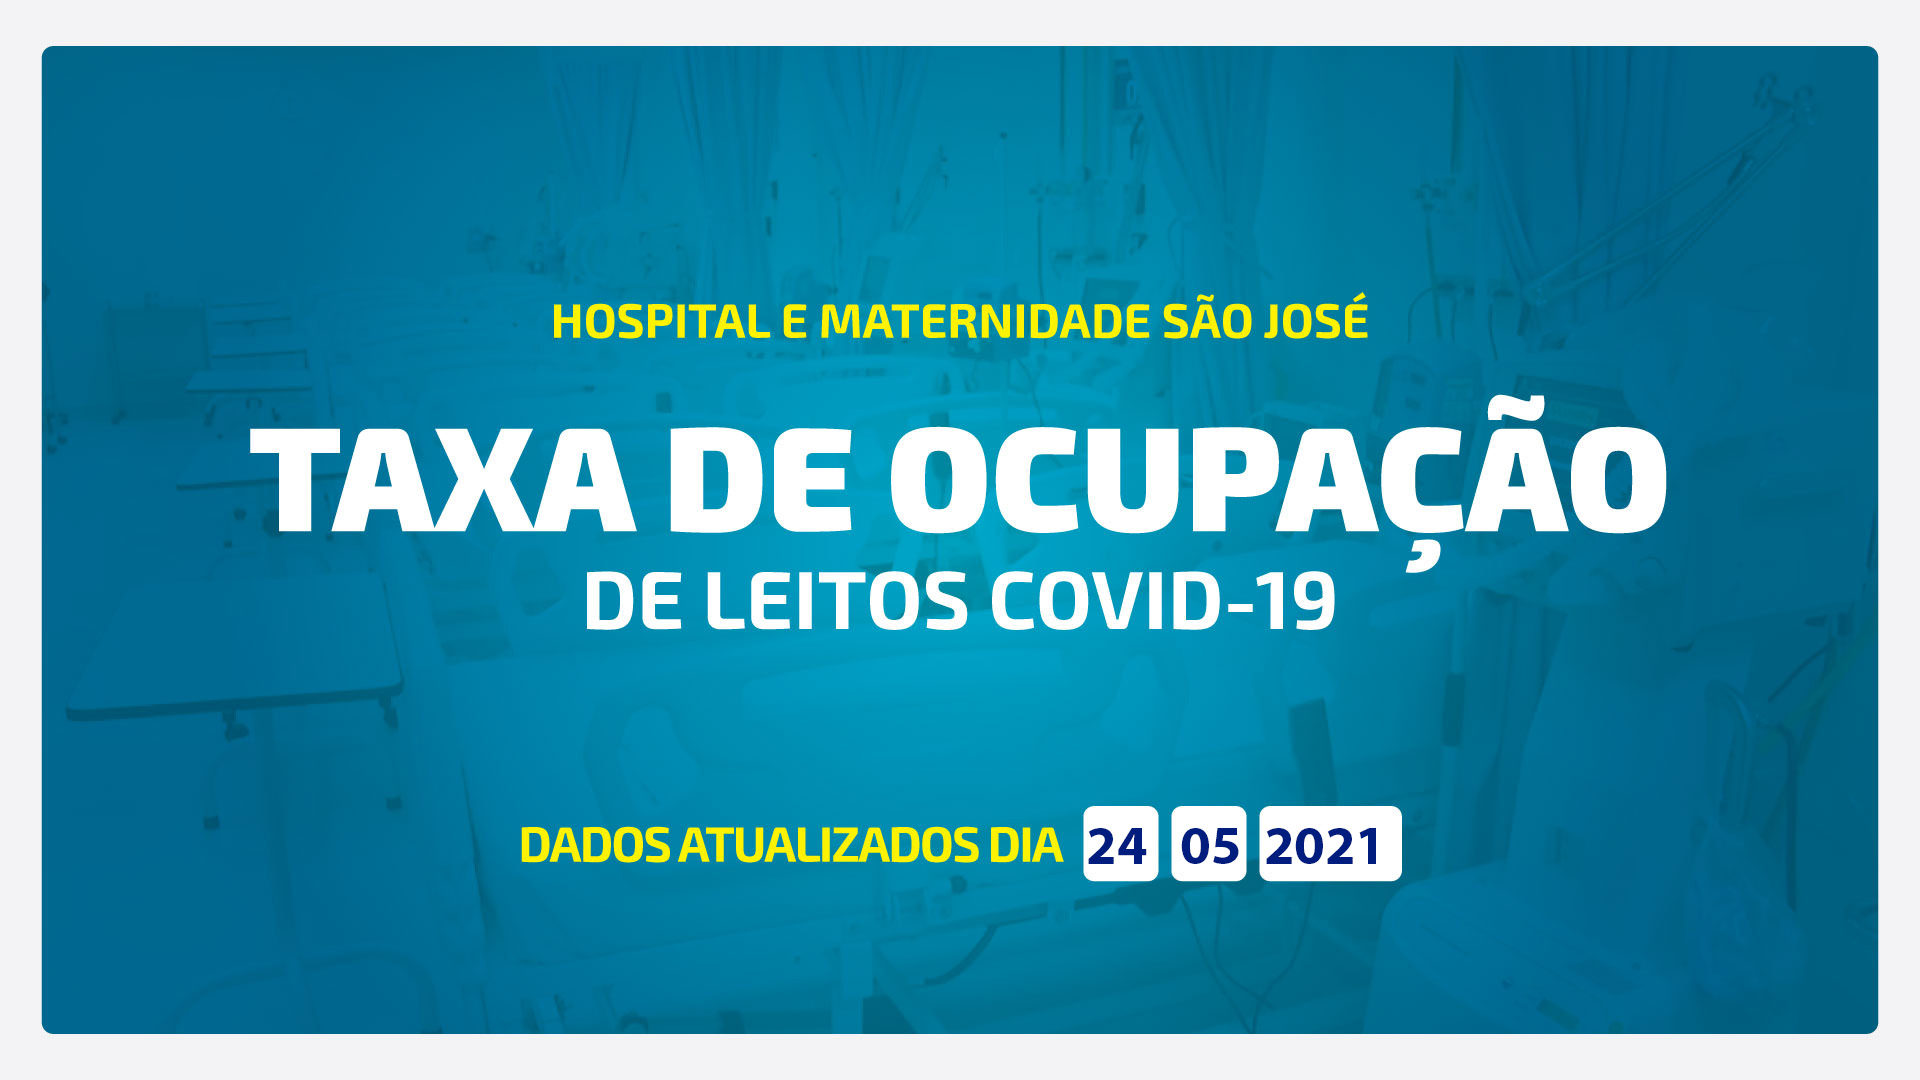 TAXA DE OCUPAÇÃO DE LEITOS DE COVID-19 ATUALIZADA DIA 24/05/2021